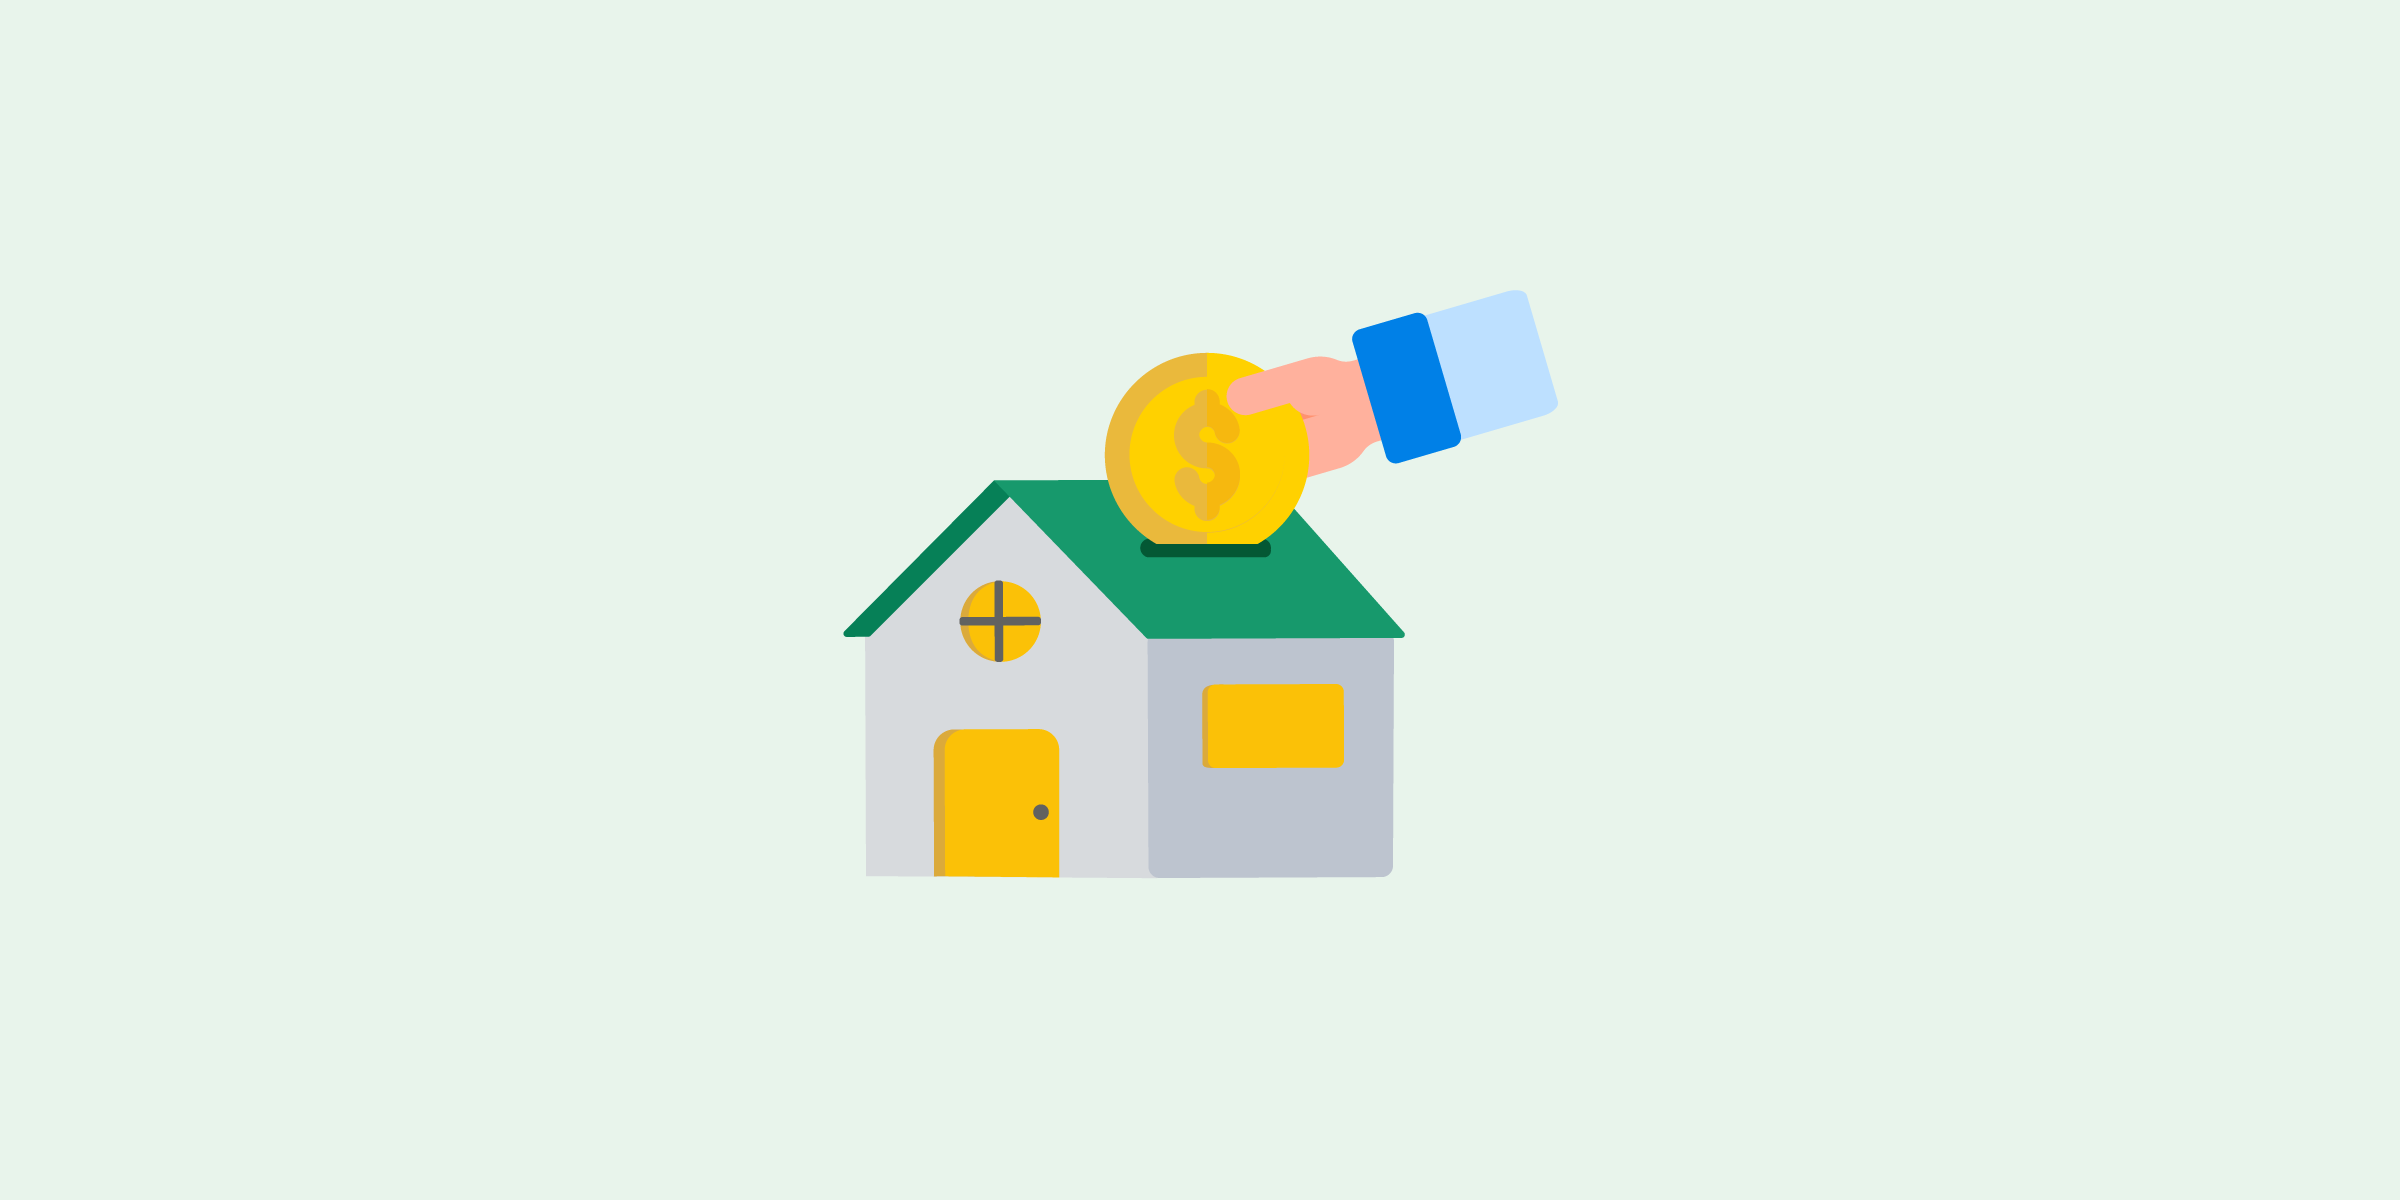 Ilustración de una casa, con una mano de una persona en la parte superior derecha insertando una moneda por el techo de la casa, simulando una alcancía.